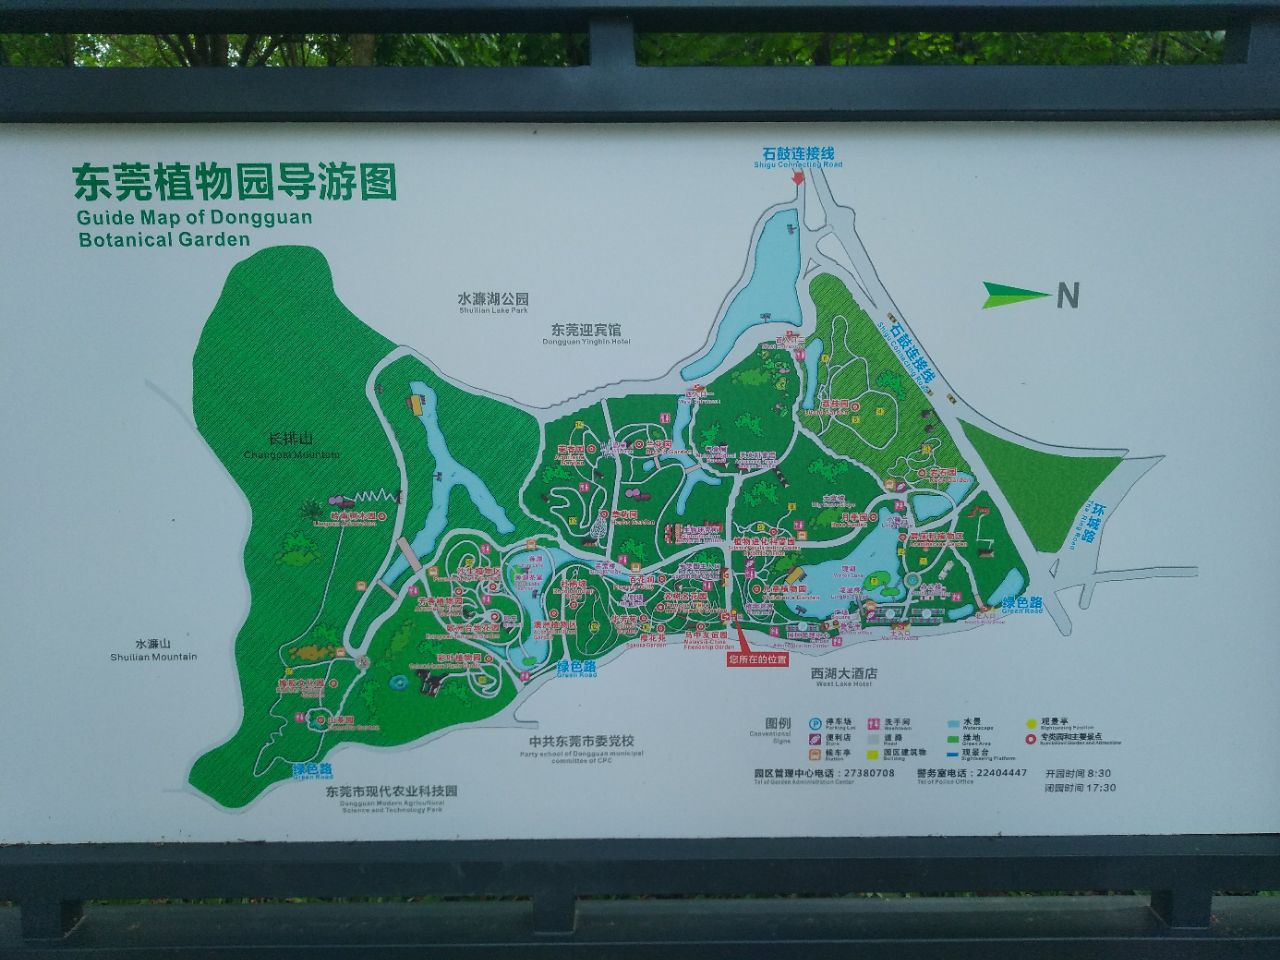 科学网—图说|华南国家植物园之路 - 廖景平的博文